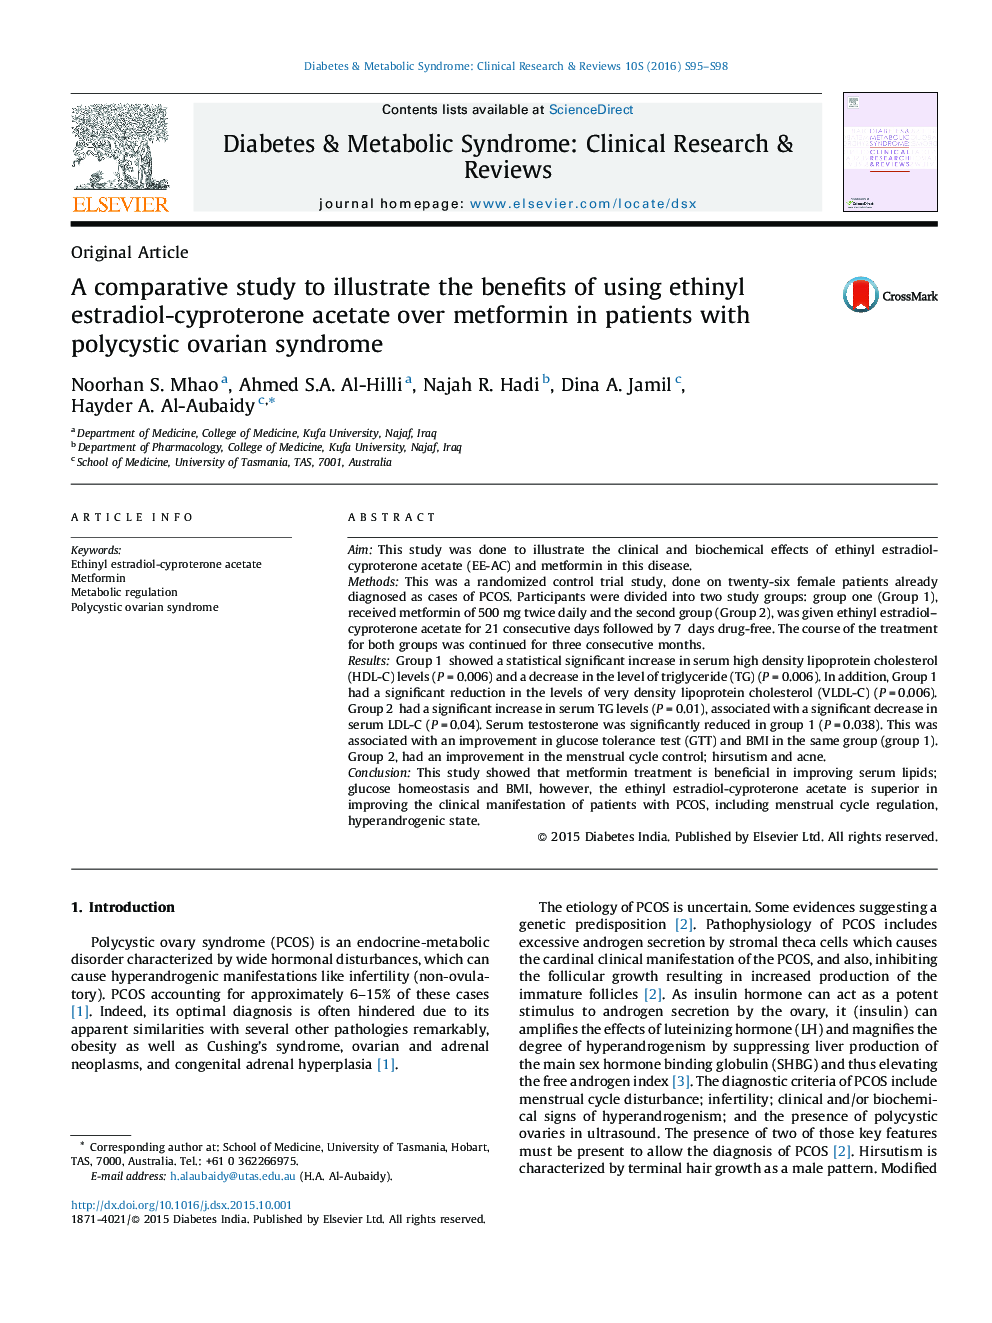 یک مطالعه تطبیقی برای نشان دادن مزایای استفاده از استات استرادیول ـ سیپروترون اتینیل بر متفورمین در بیماران مبتلا به سندرم تخمدان پلی کیستیک